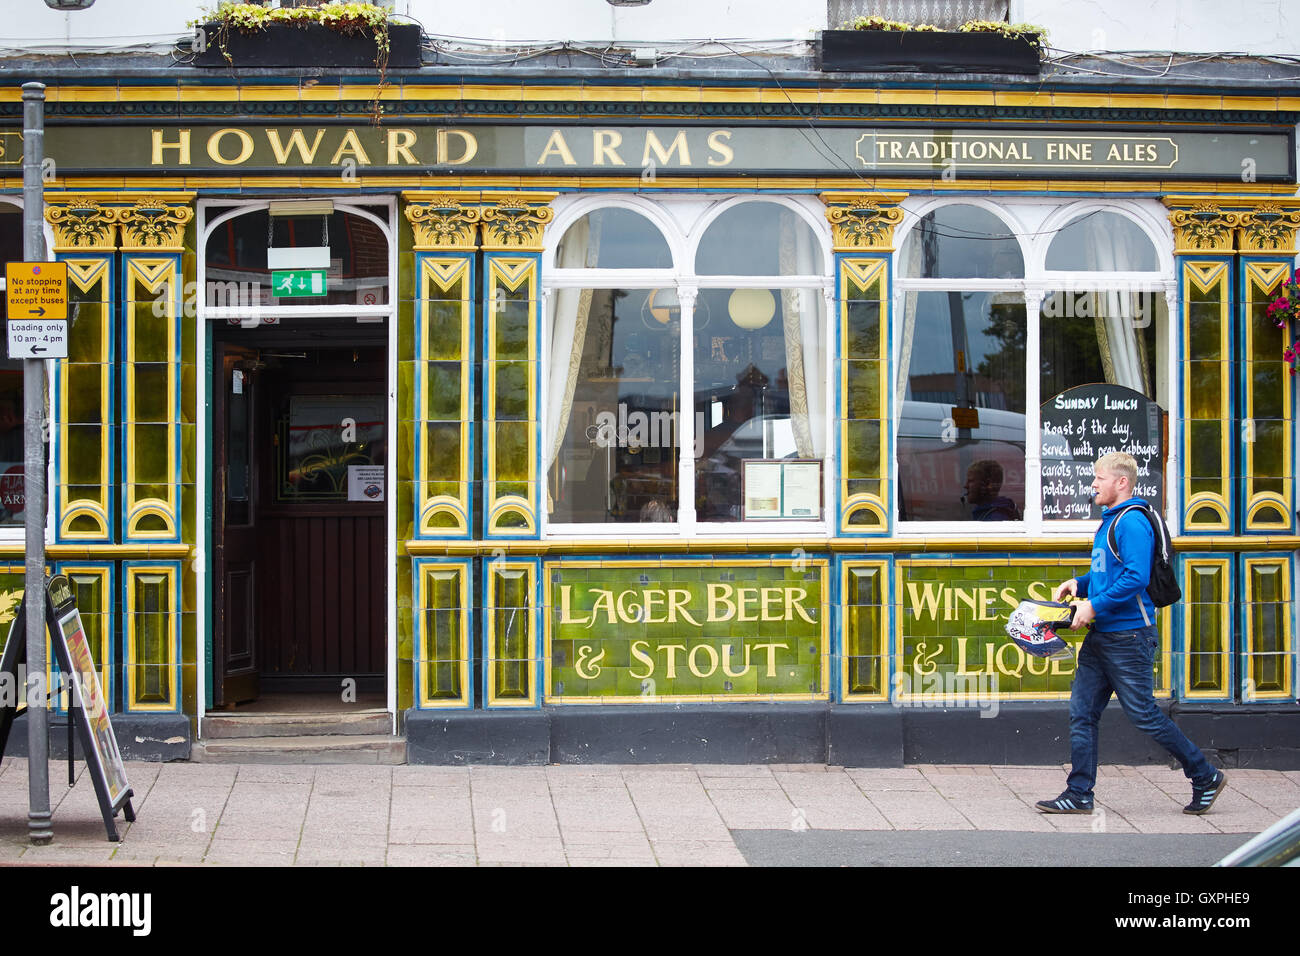 Fliesen traditionelle uk Pub vorne außen Carlisle, Cumbria Attraktivität Keramik Glanz dekorativ verziert Howard Arme grün Stockfoto